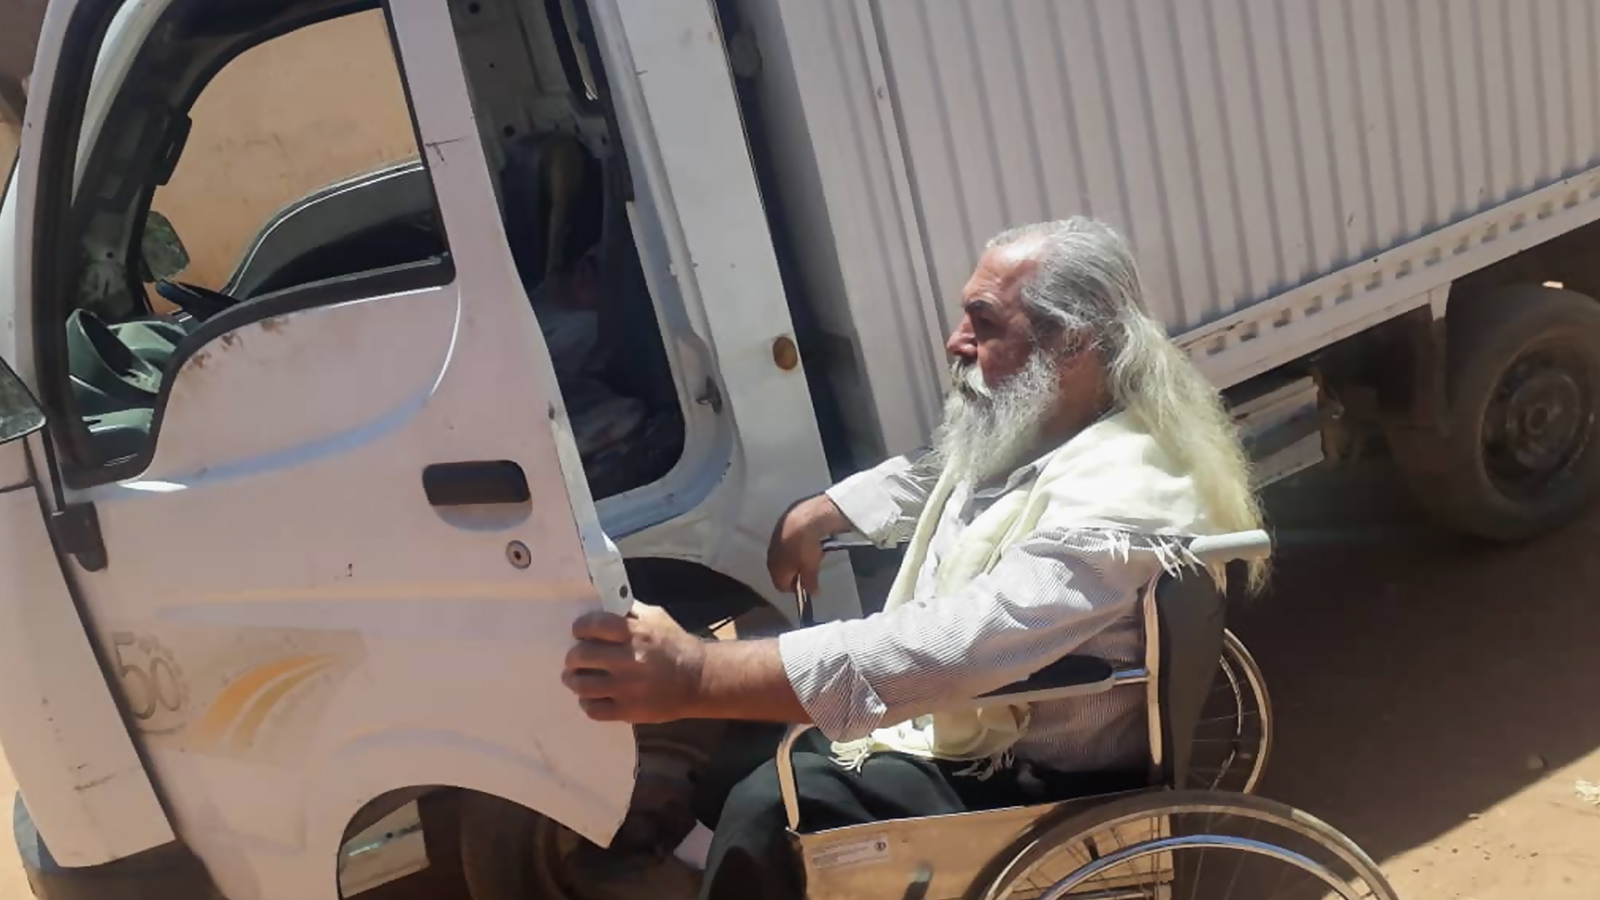 ‪الإعاقة لم تمنع أبو كرم الله من العمل، ولكن الحظر الشامل أفقده مصدر رزقه‬ (الجزيرة)